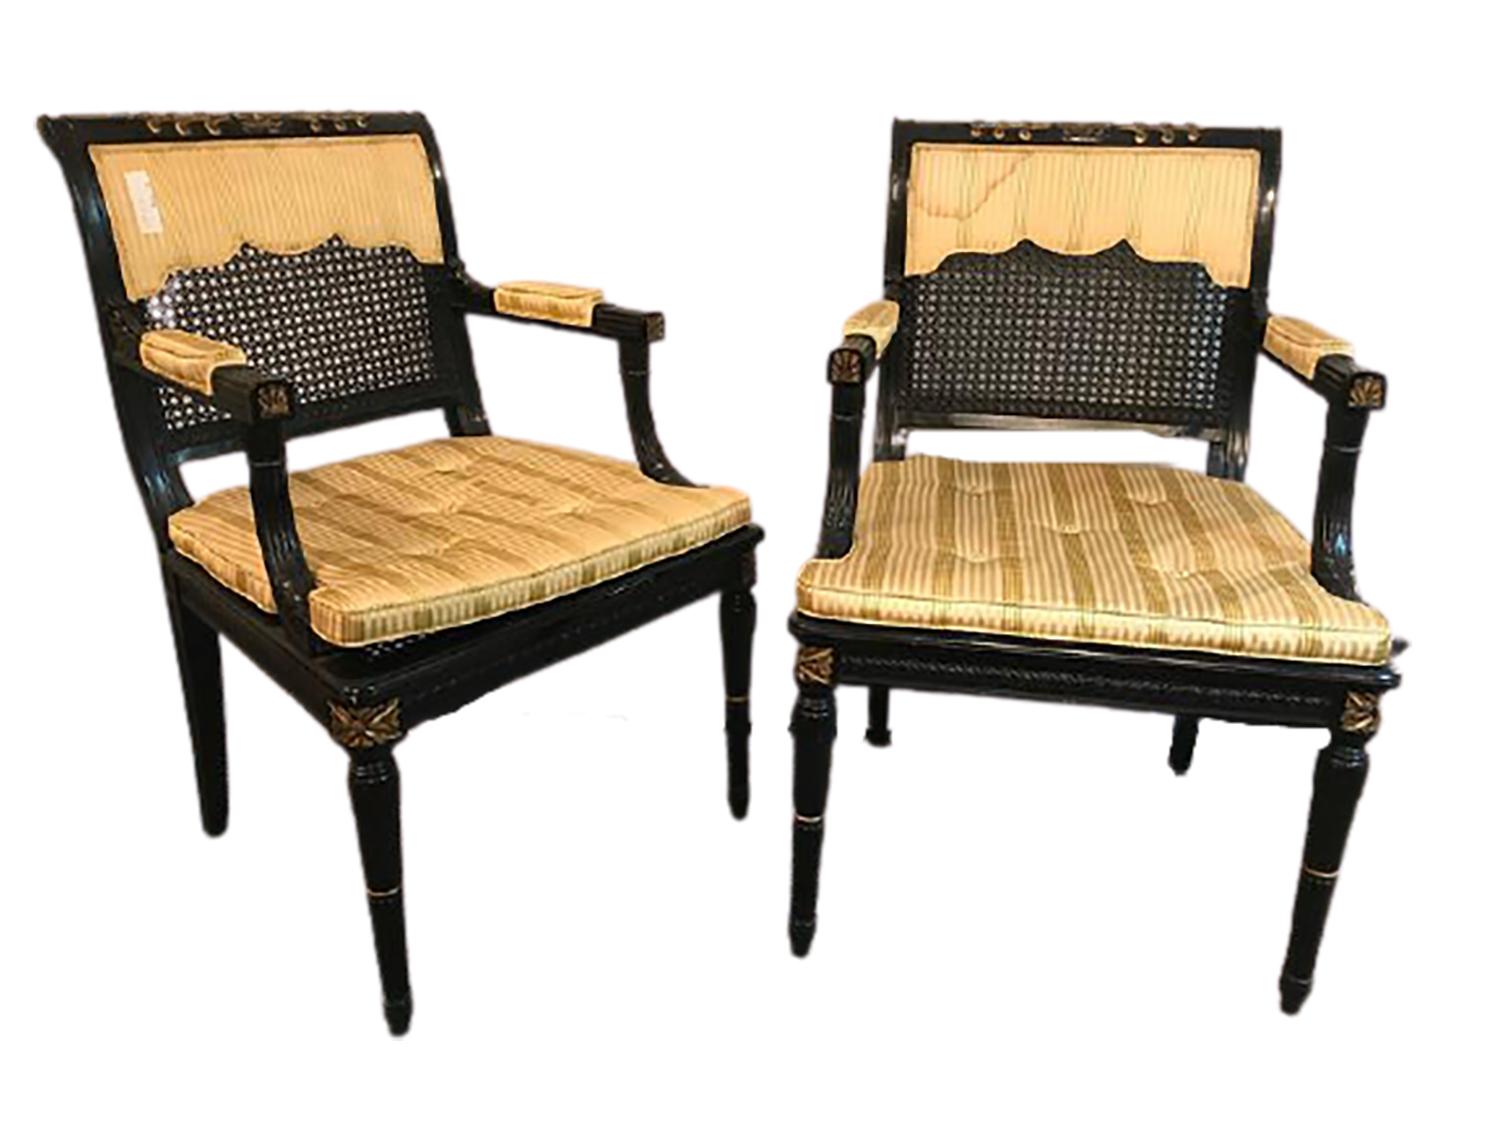 Zwei Sessel mit schwarzer und goldener Schilfrohrlehne, Fauteuils, zugeschrieben Maison Jansen. Jeder ebonisierte Rahmen mit feinen goldenen dekorativen Lichtern. Das Paar hat gepolsterte Sitze mit drapierten, halb verdeckten Rückenlehnen (eine